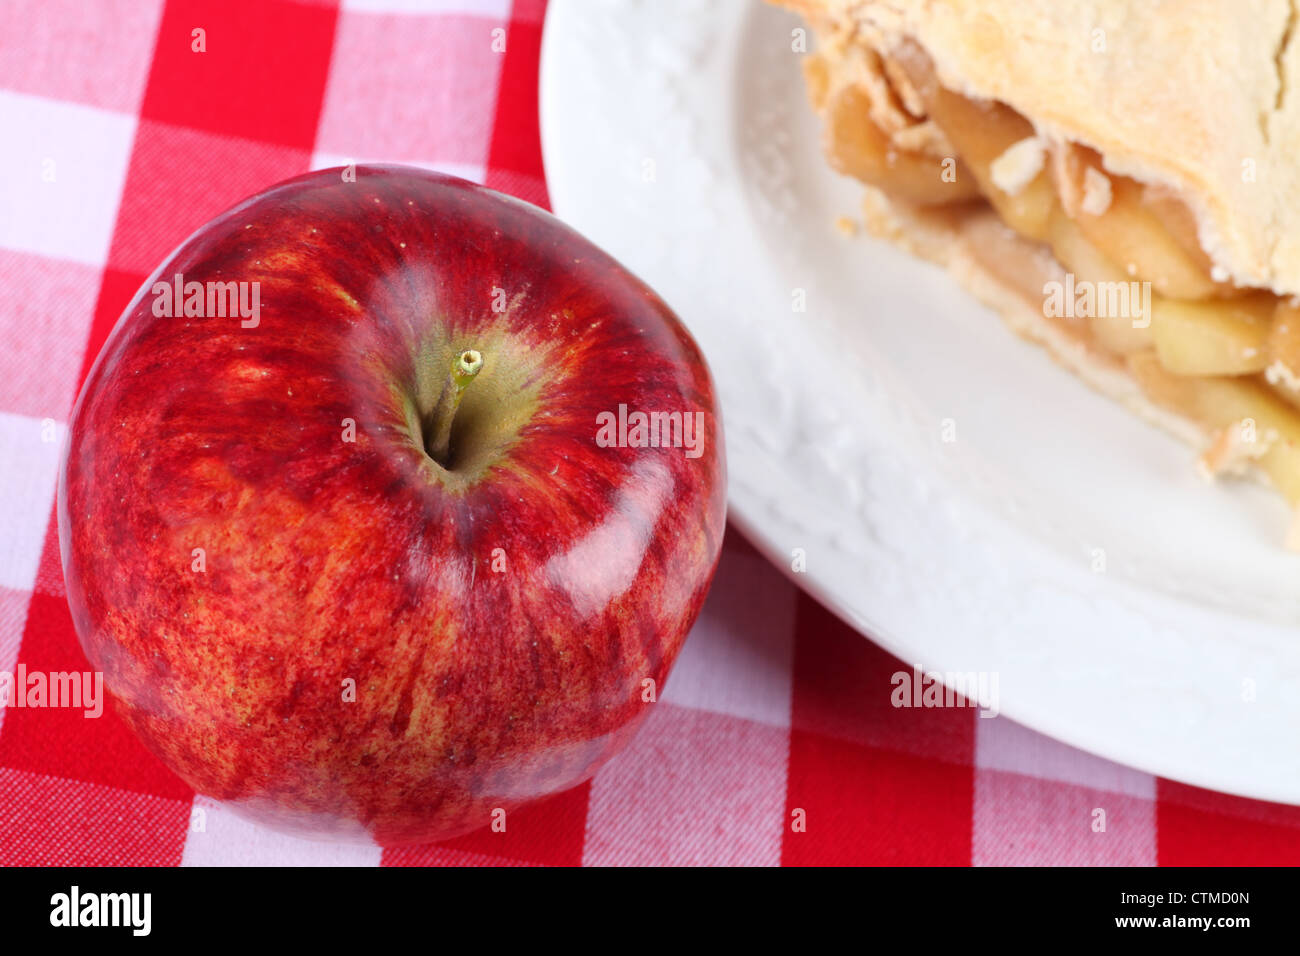 Ein reifer roter Apfel auf karierte Tischdecke neben einem Stück Apfelkuchen. Stockfoto